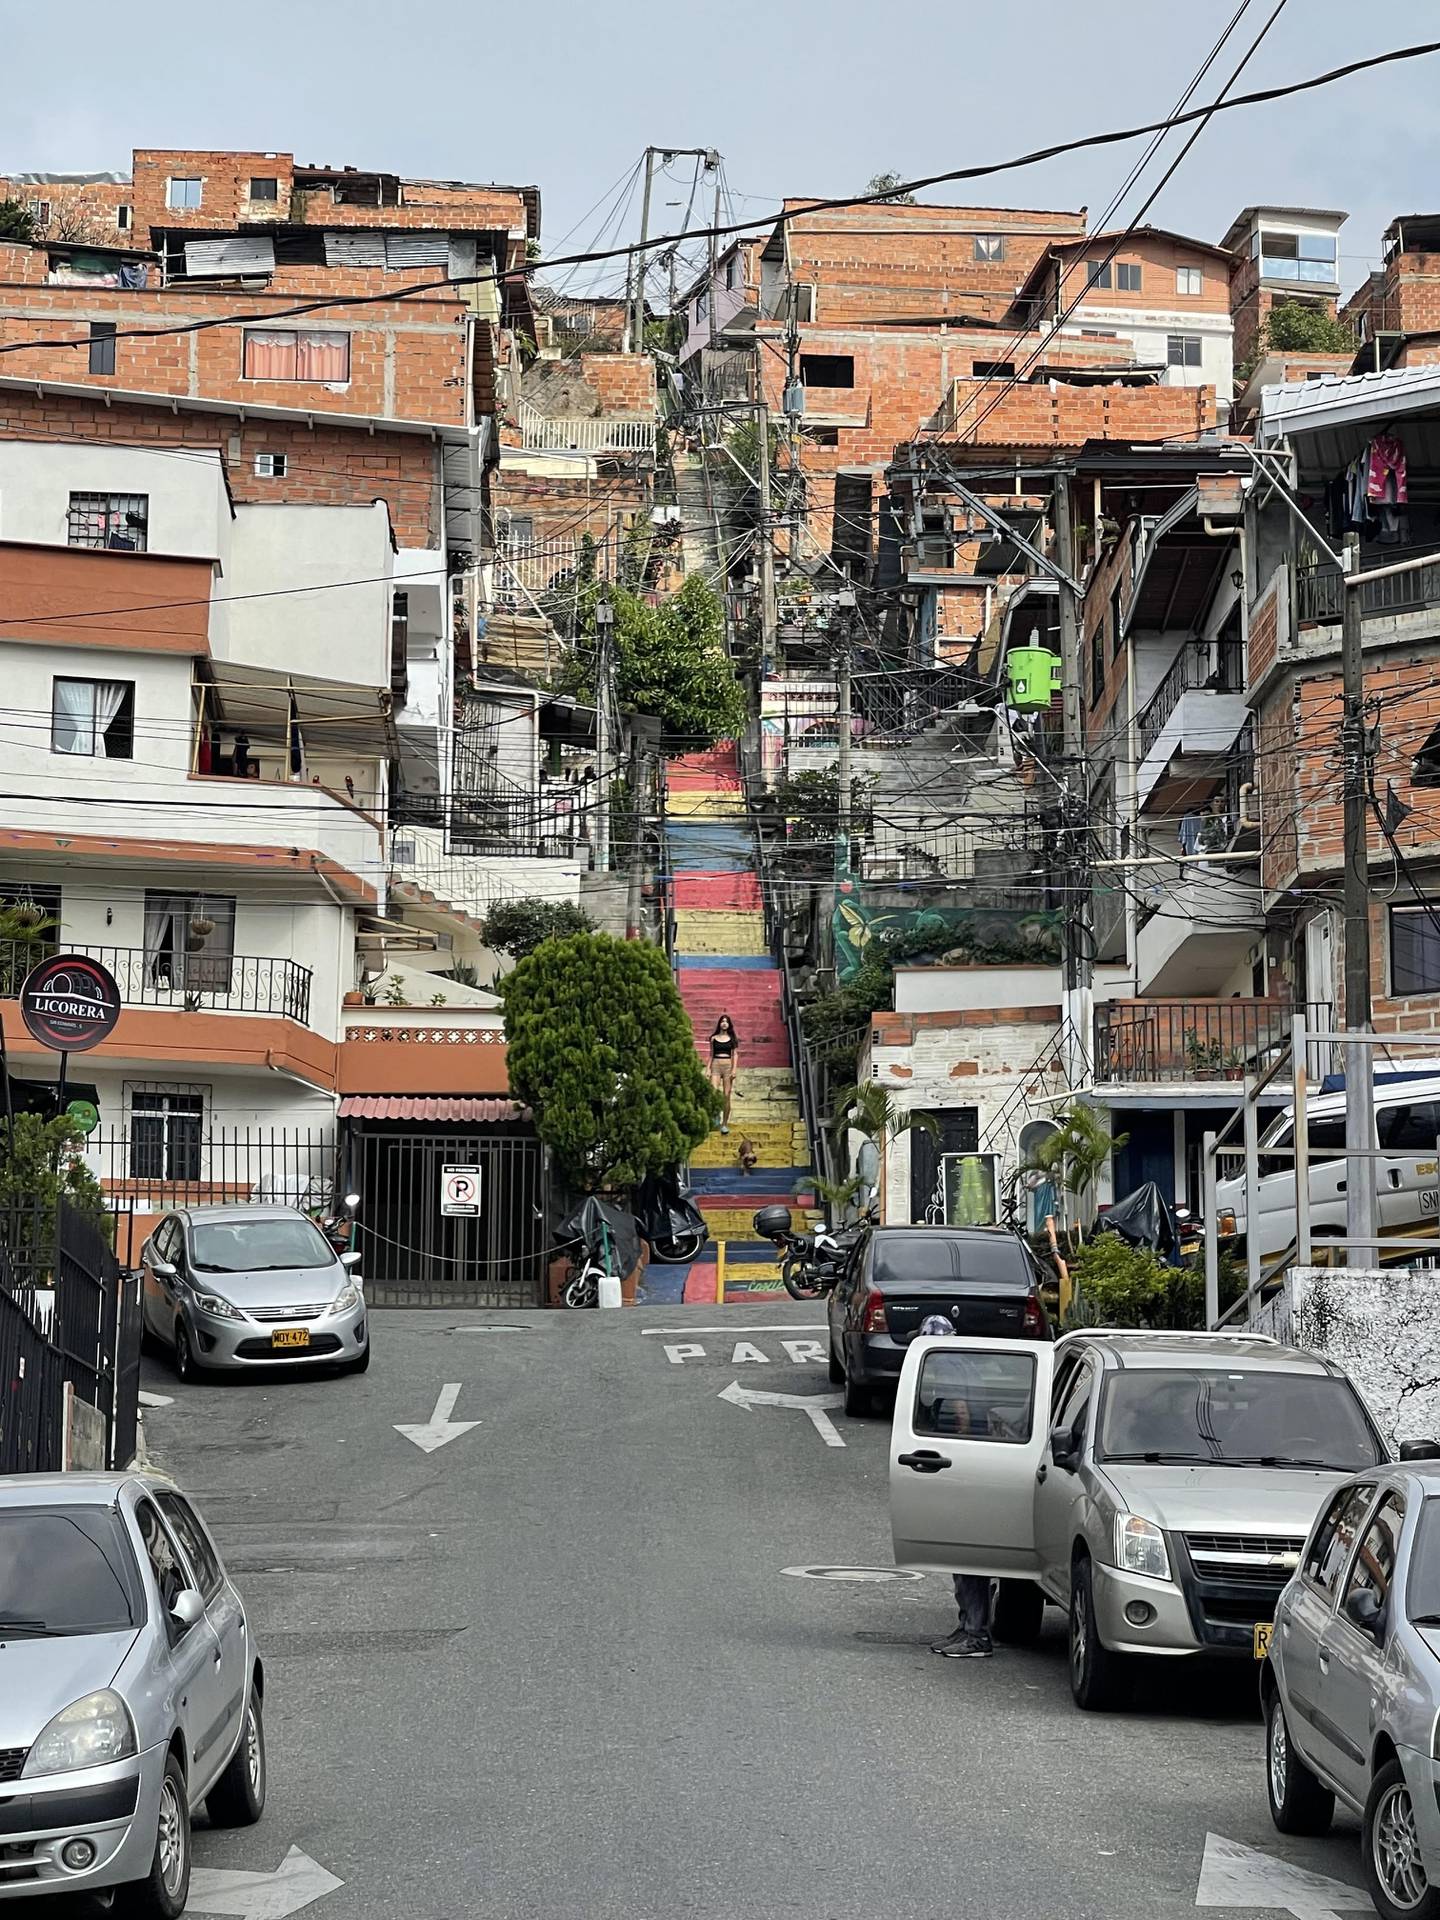 Comuna 13, Medellín, Colombia. Escaleras que aún comunican la barriada